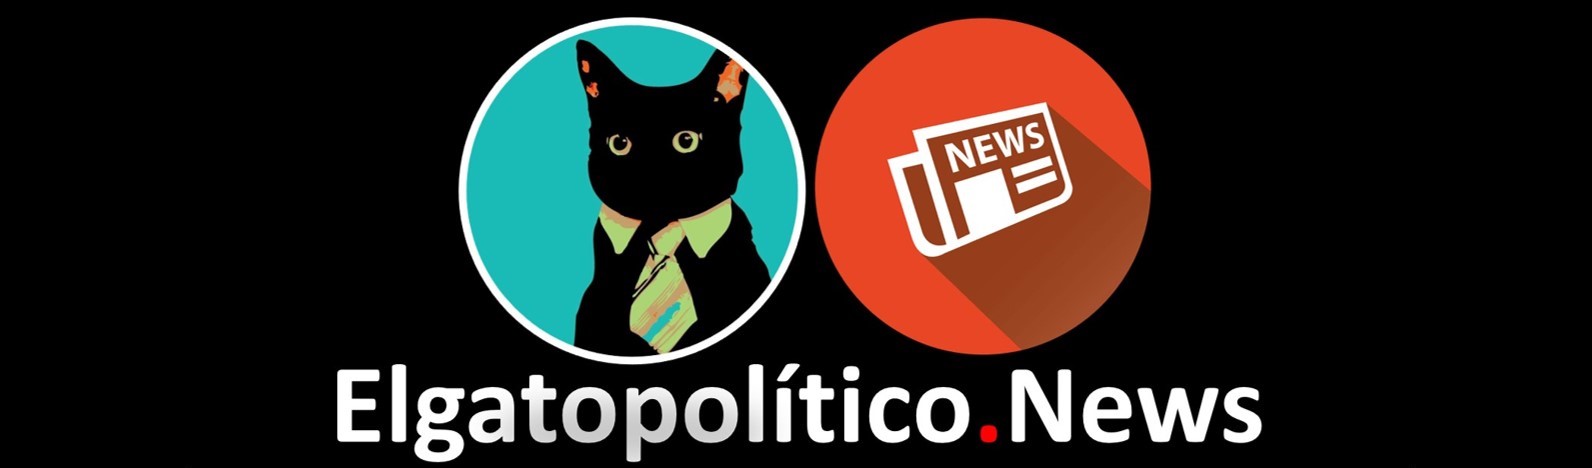 El gato político